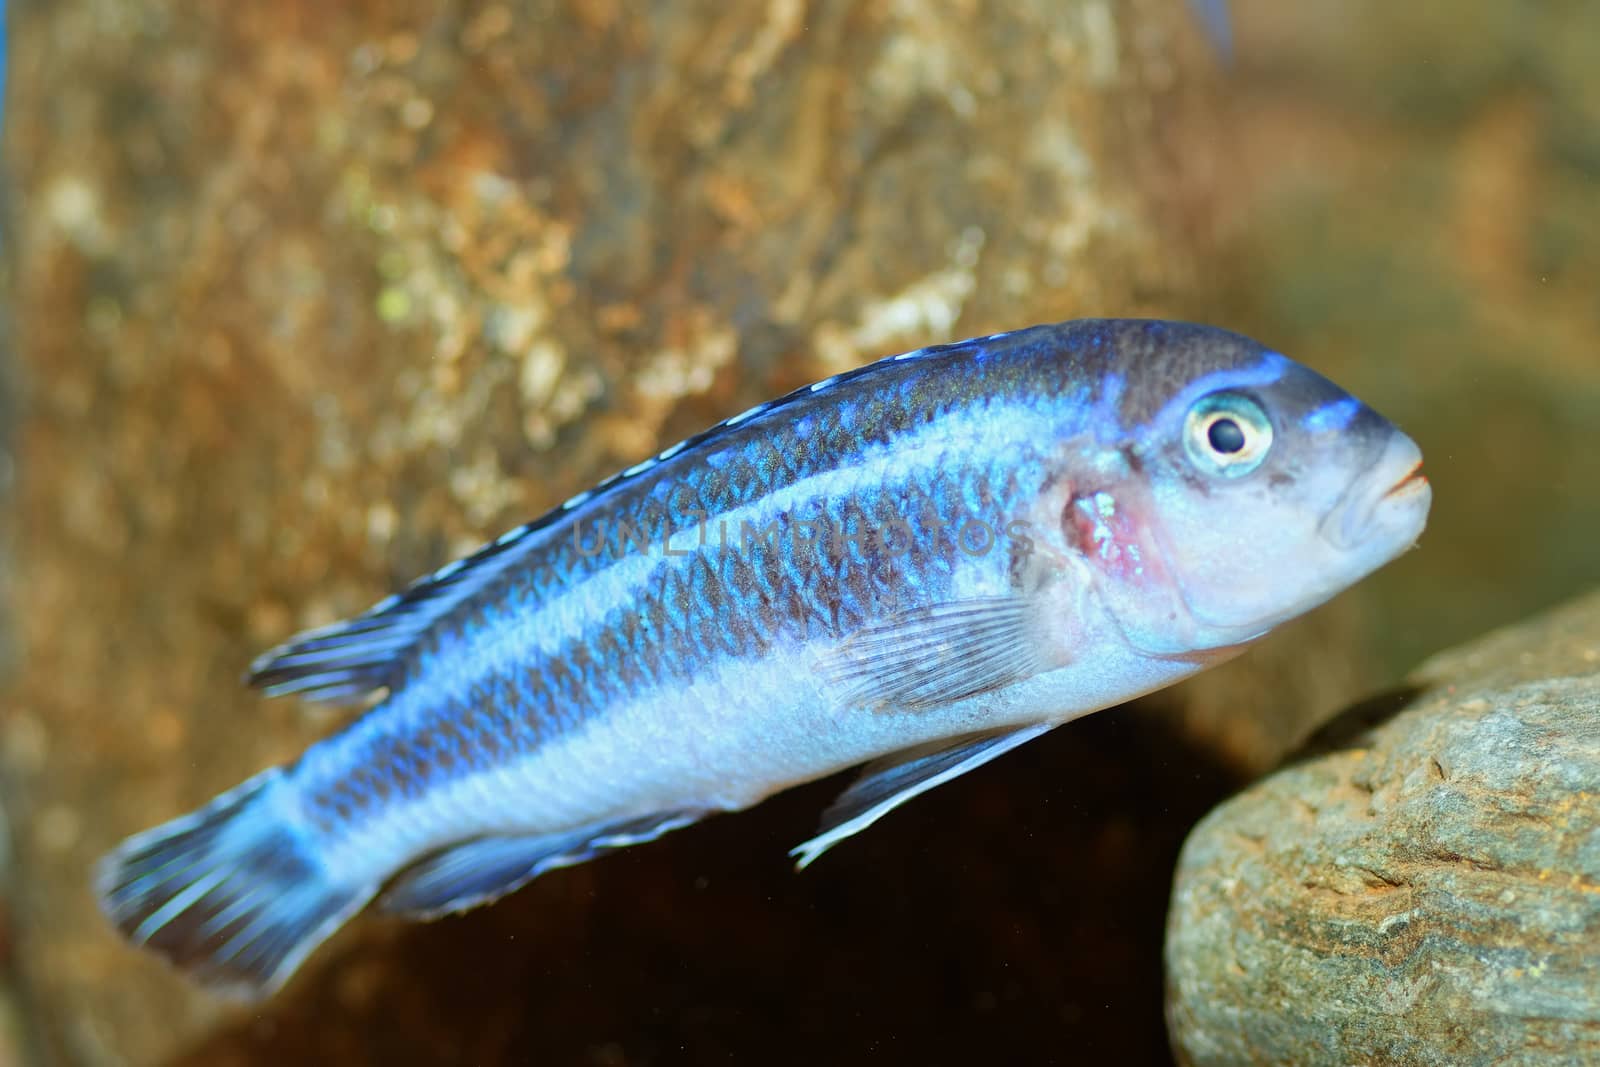 Aquarium fish from genus Melanochromis.